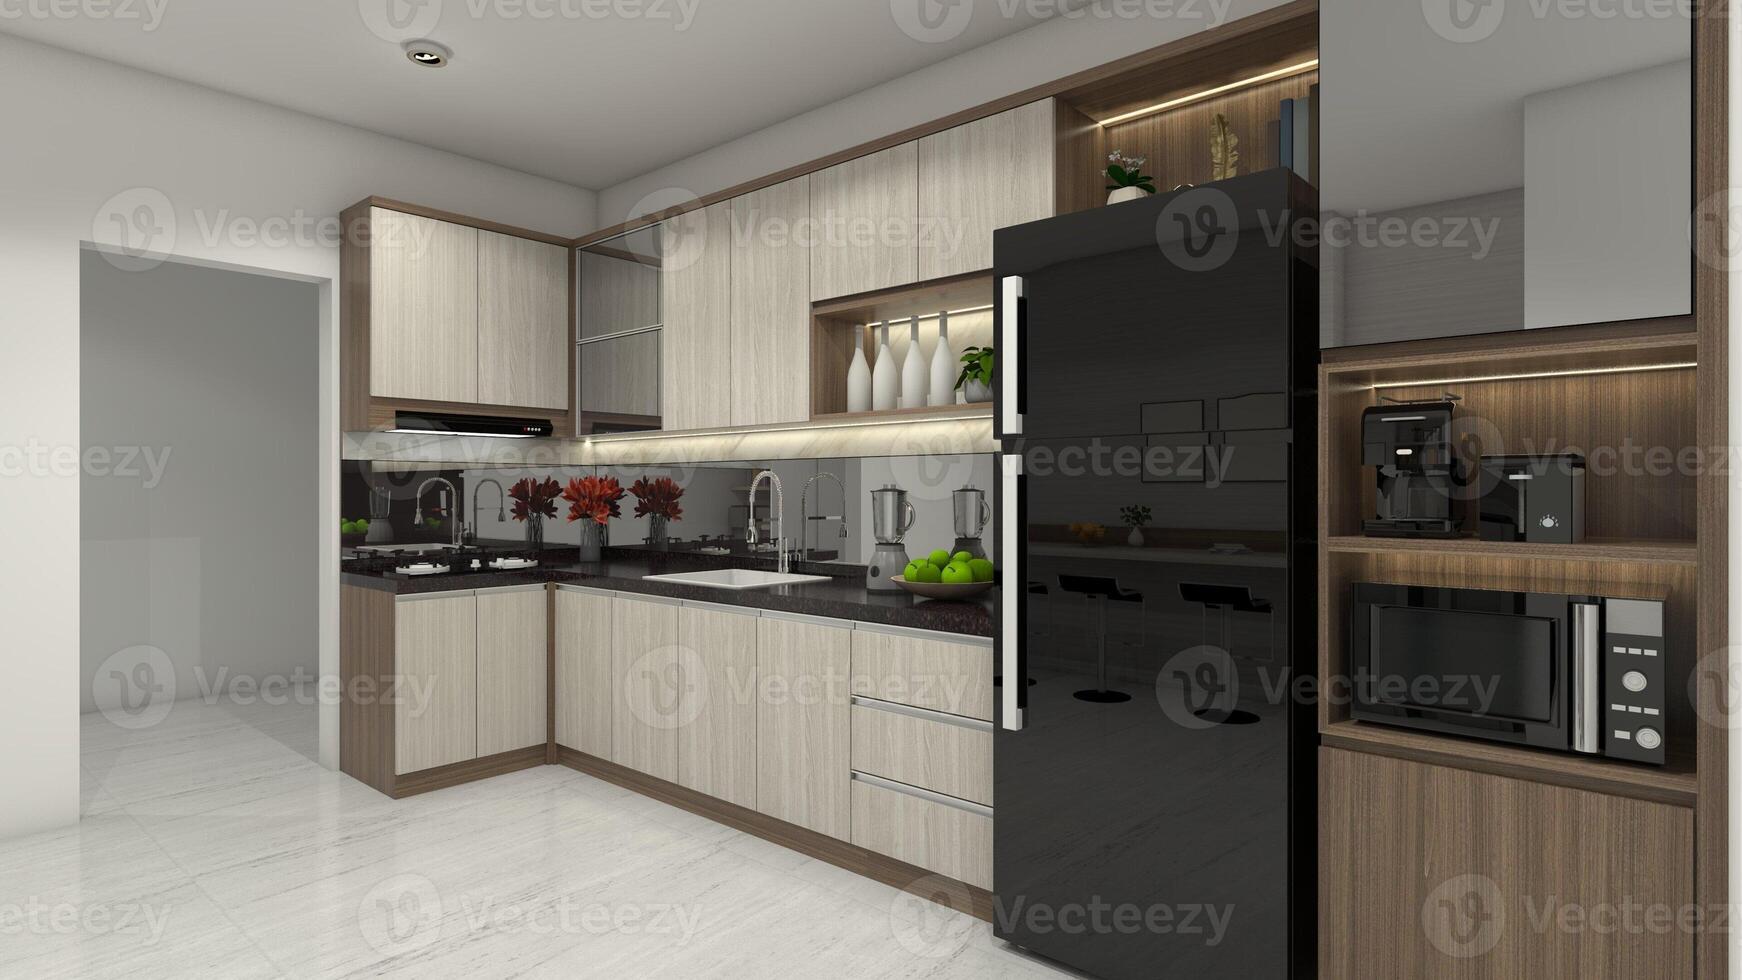 rustik kök design med trä- skåp inredning, 3d illustration foto